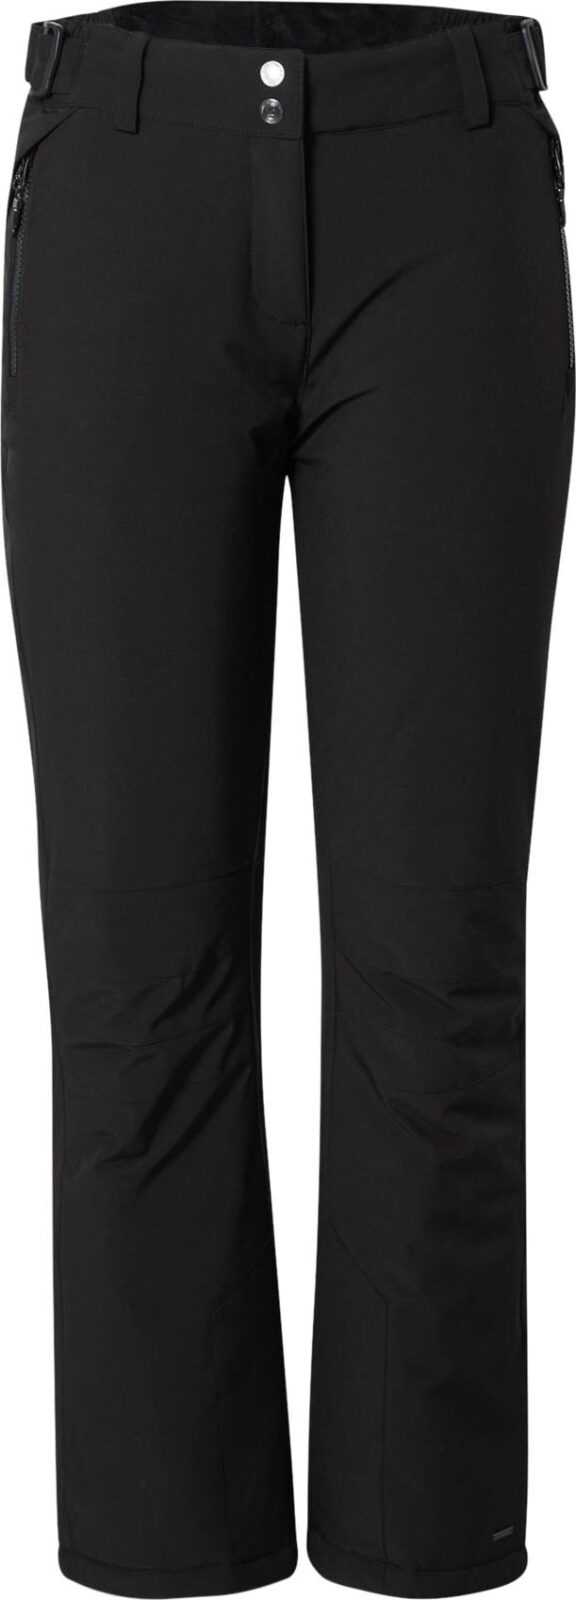 KILLTEC Outdoorové kalhoty 'Siranya' černá